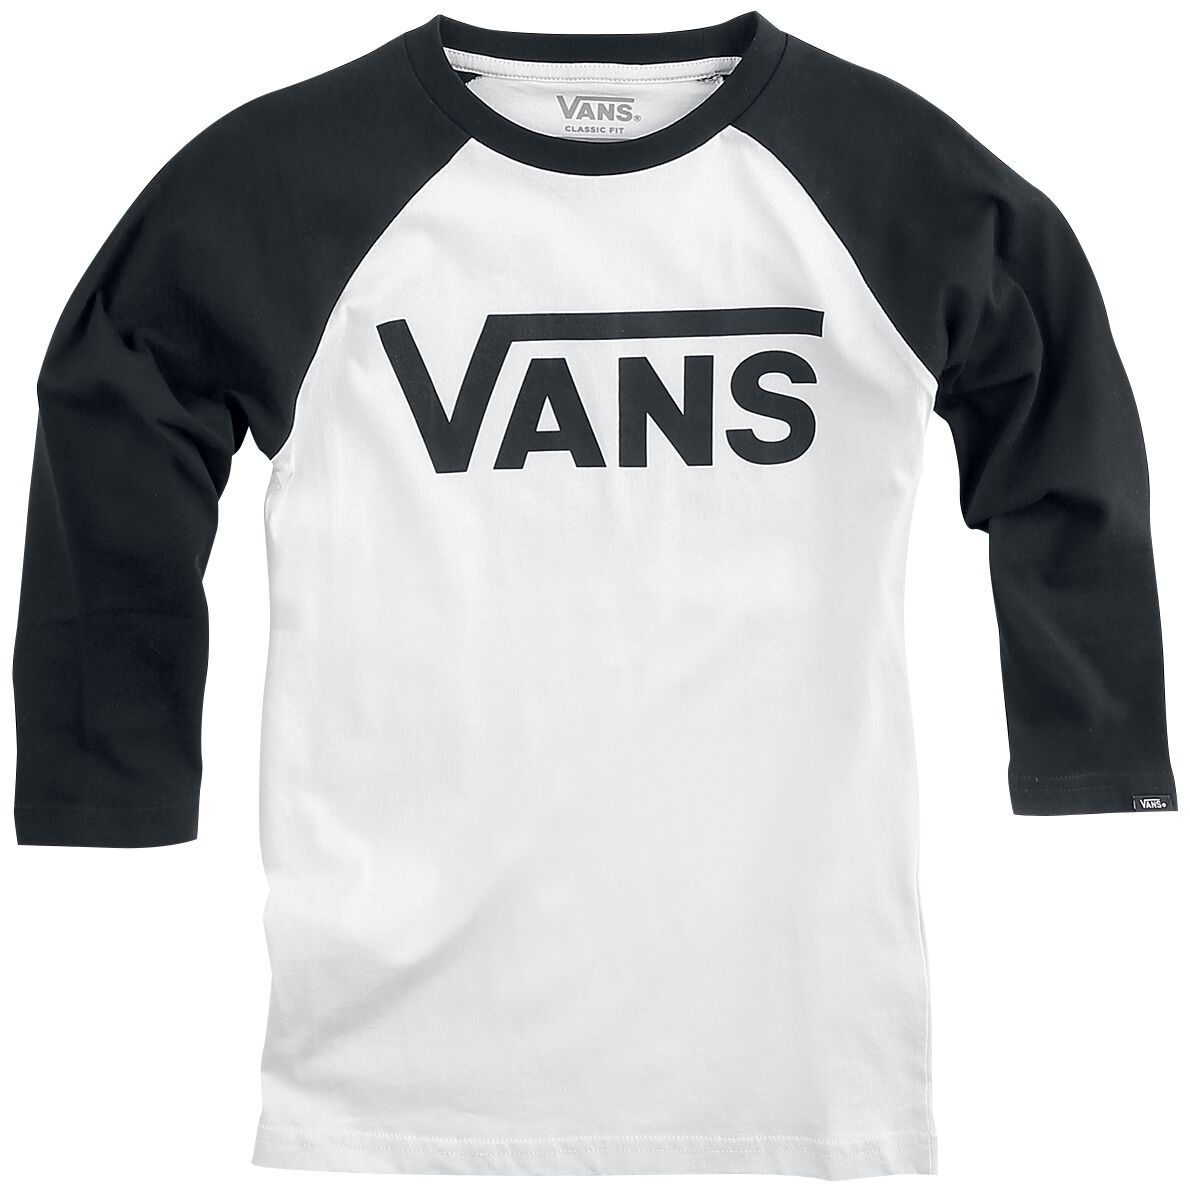 Vans Kids Langarmshirt - BY VANS Classic Raglan - S bis XL - für Mädchen & Jungen - Größe XL - schwarz/weiß von Vans Kids